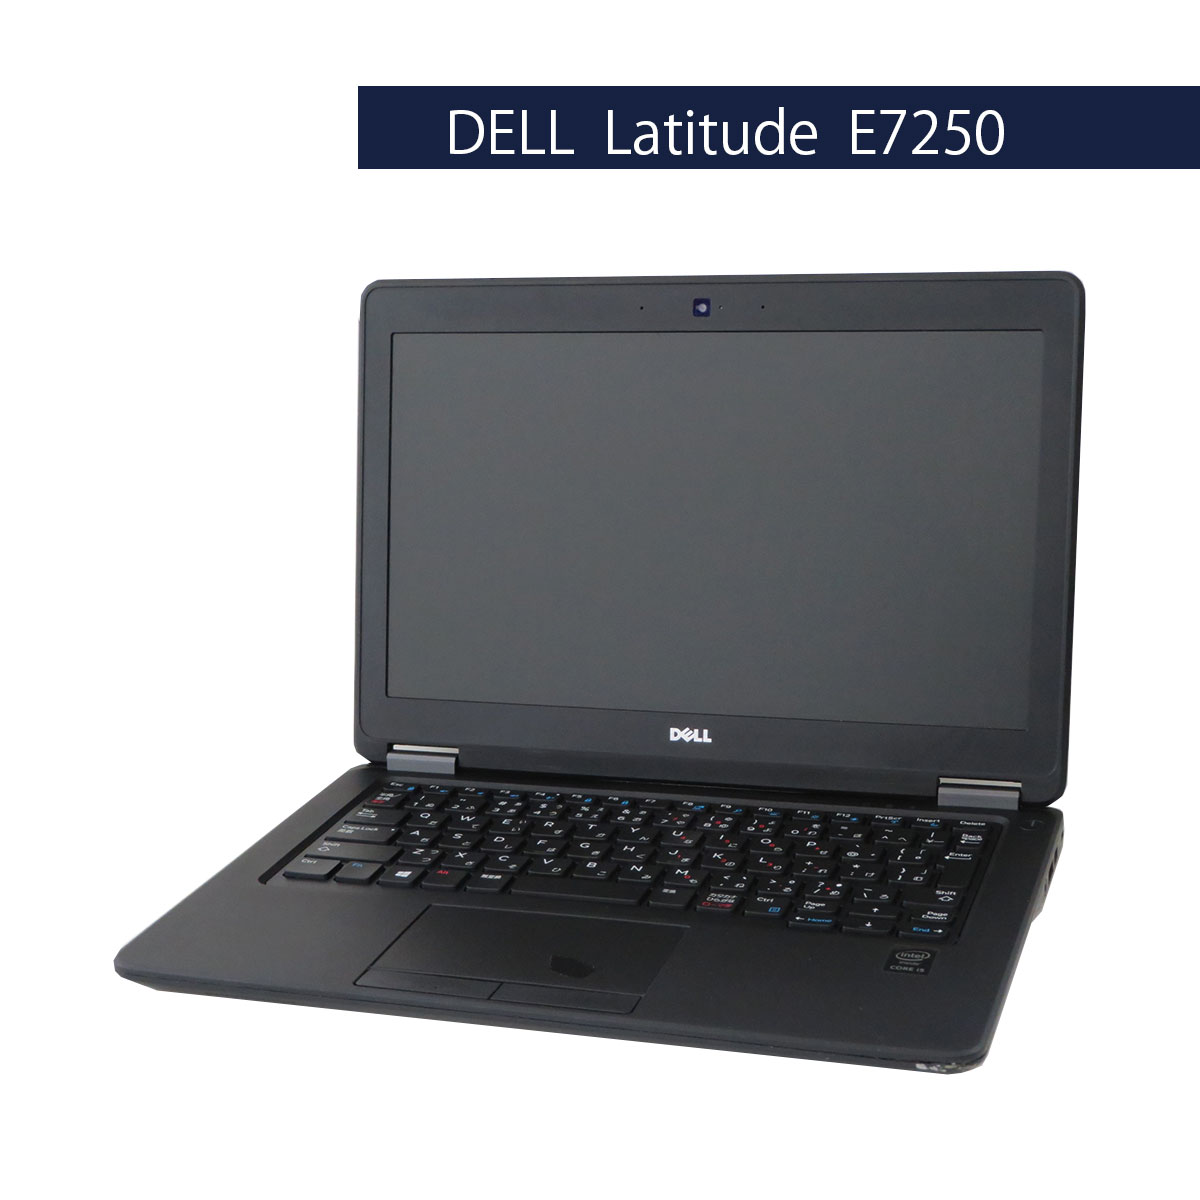 DELL Latitude E7250 Core i5 5300U Windows10 Pro 64Bit